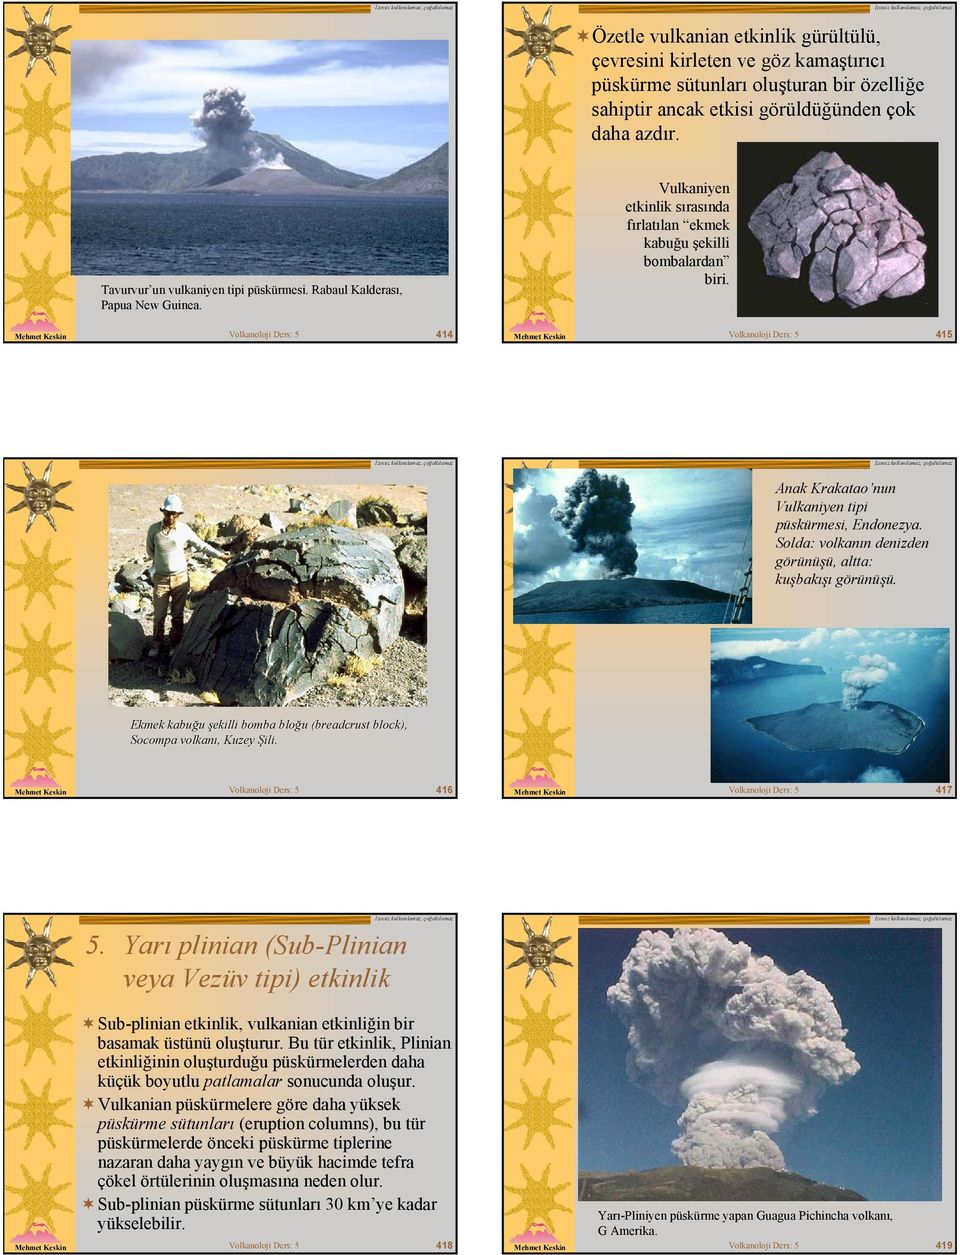 Volkanoloji Ders: 5 414 Volkanoloji Ders: 5 415 Anak Krakatao nun Vulkaniyen tipi püskürmesi, Endonezya. Solda: volkanın denizden görünüşü, altta: kuşbakışı görünüşü.